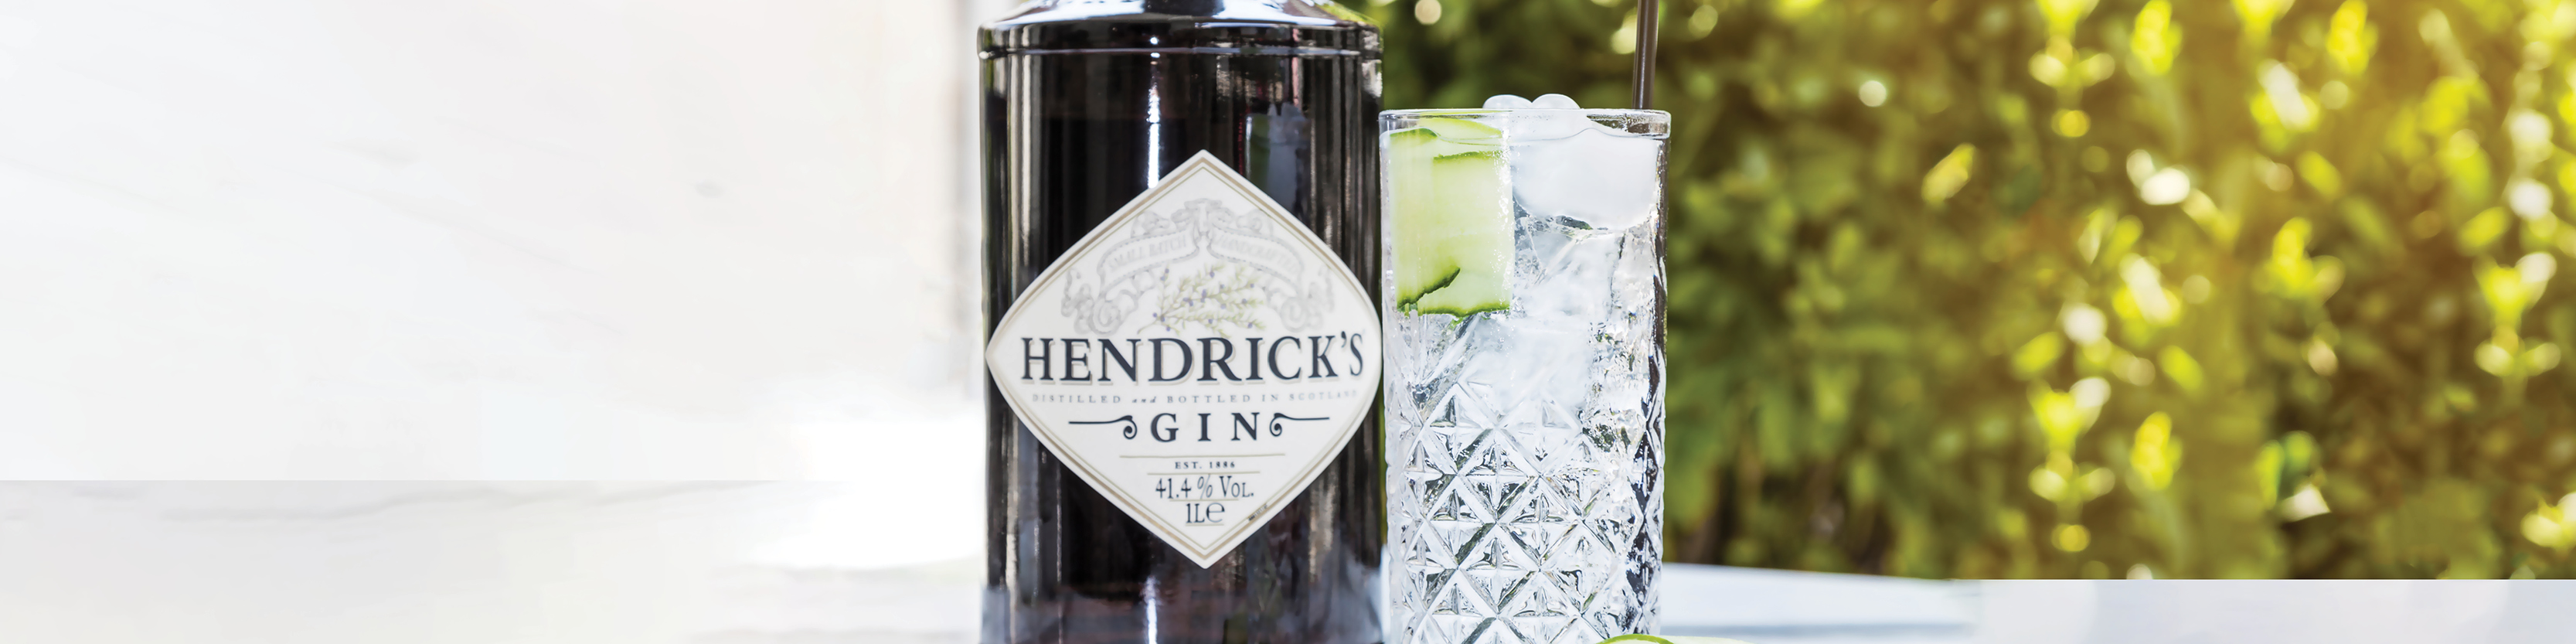 Hendricks Gin & Tonic